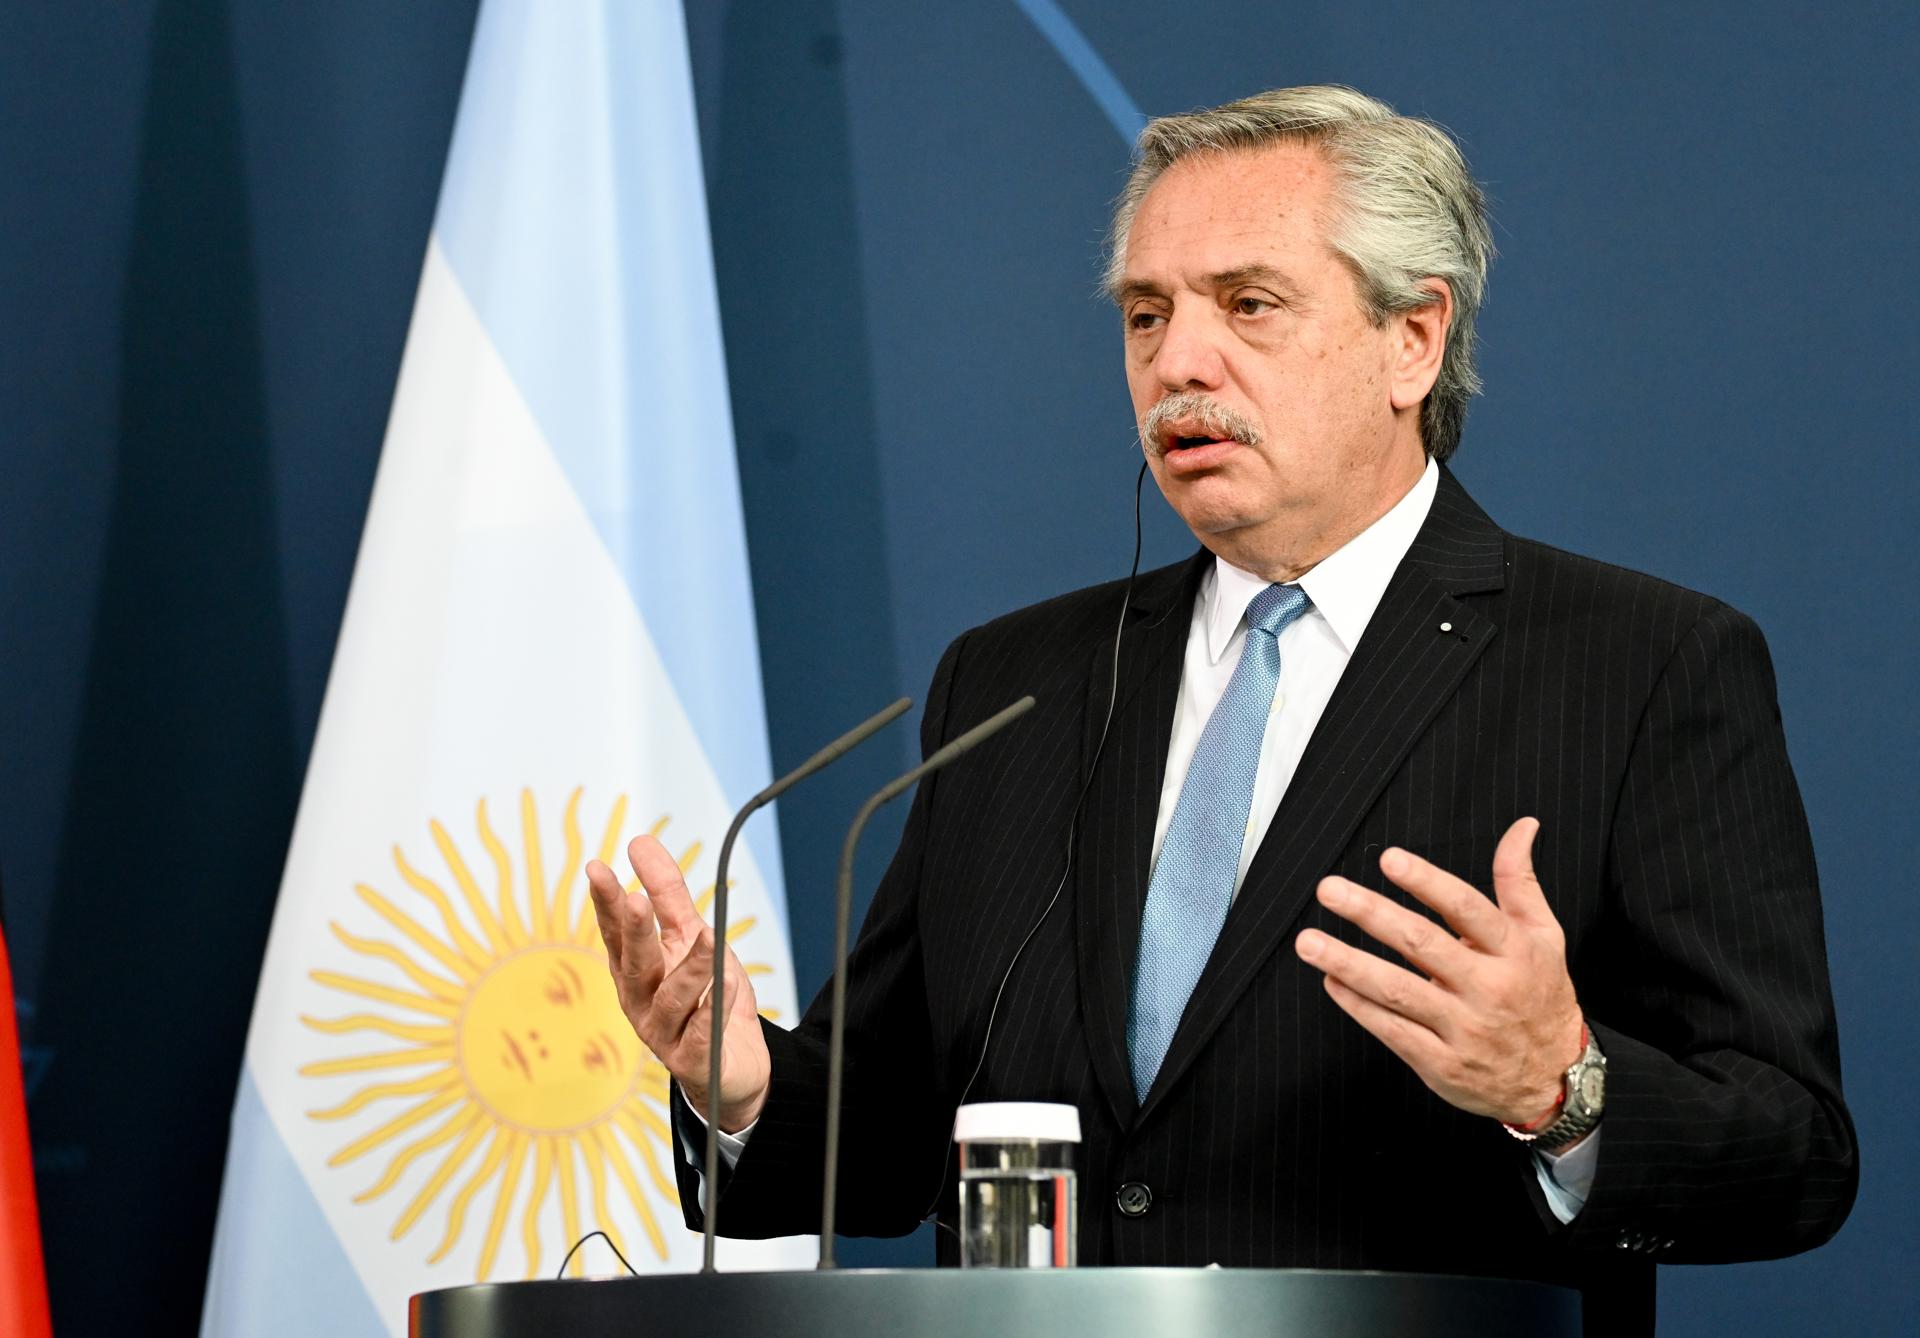 presidente argentina apoya lula da silva presidente brasil